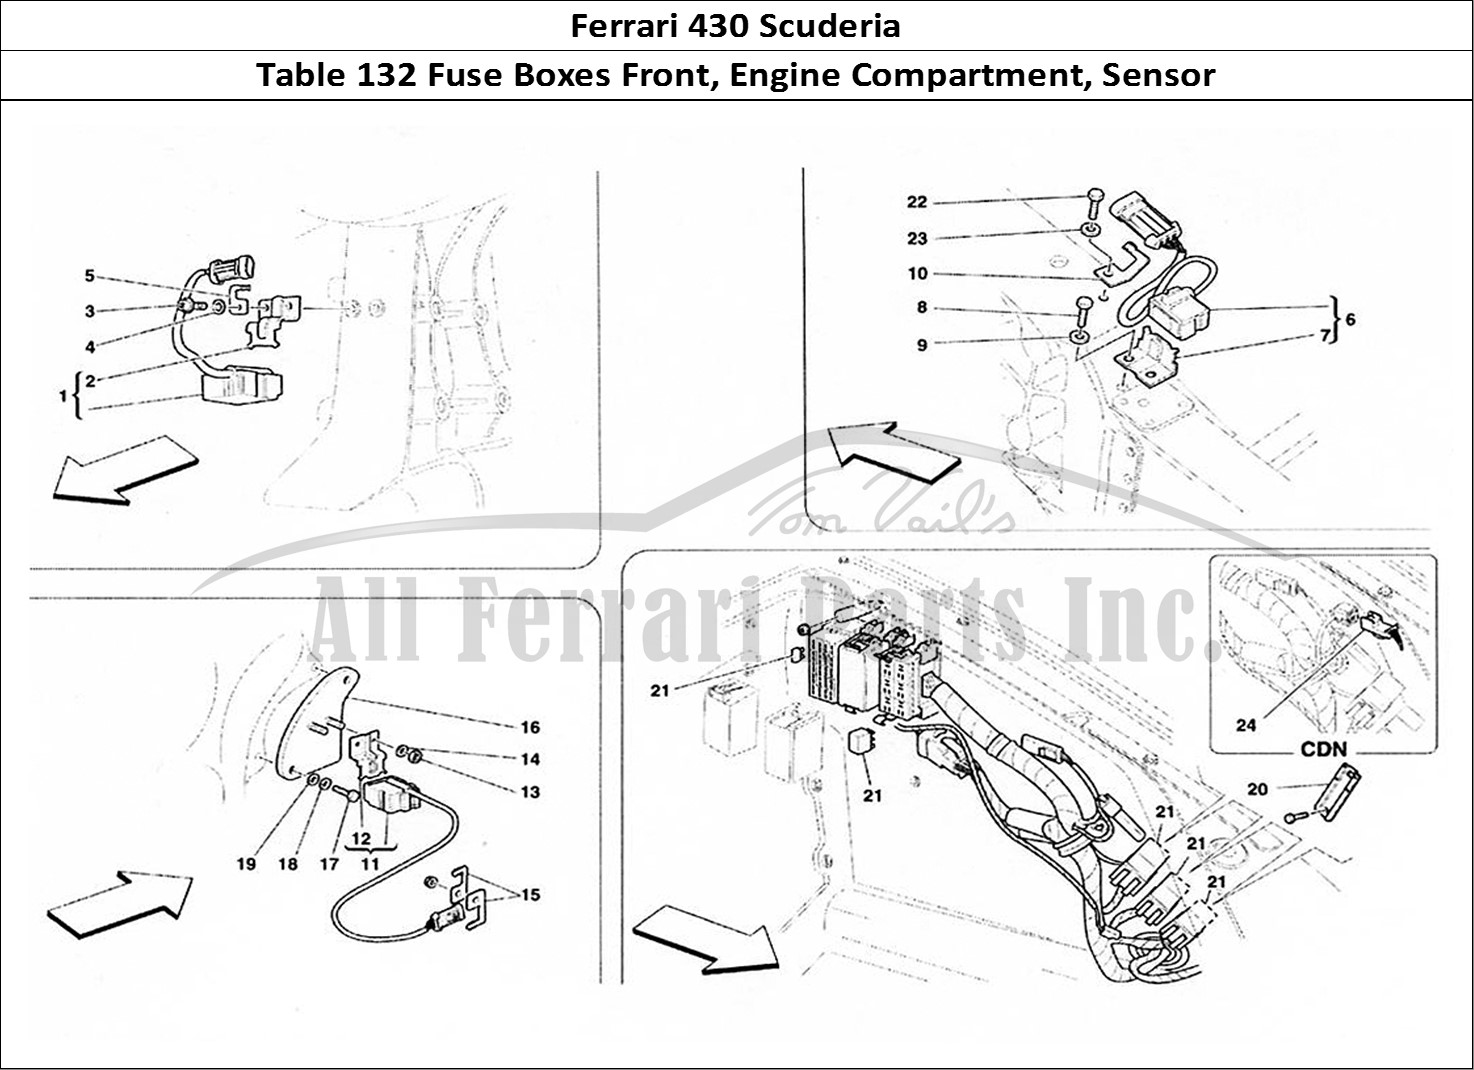 Ferrari Parts Ferrari 430 Scuderia Page 132 Front and Motor Compartme